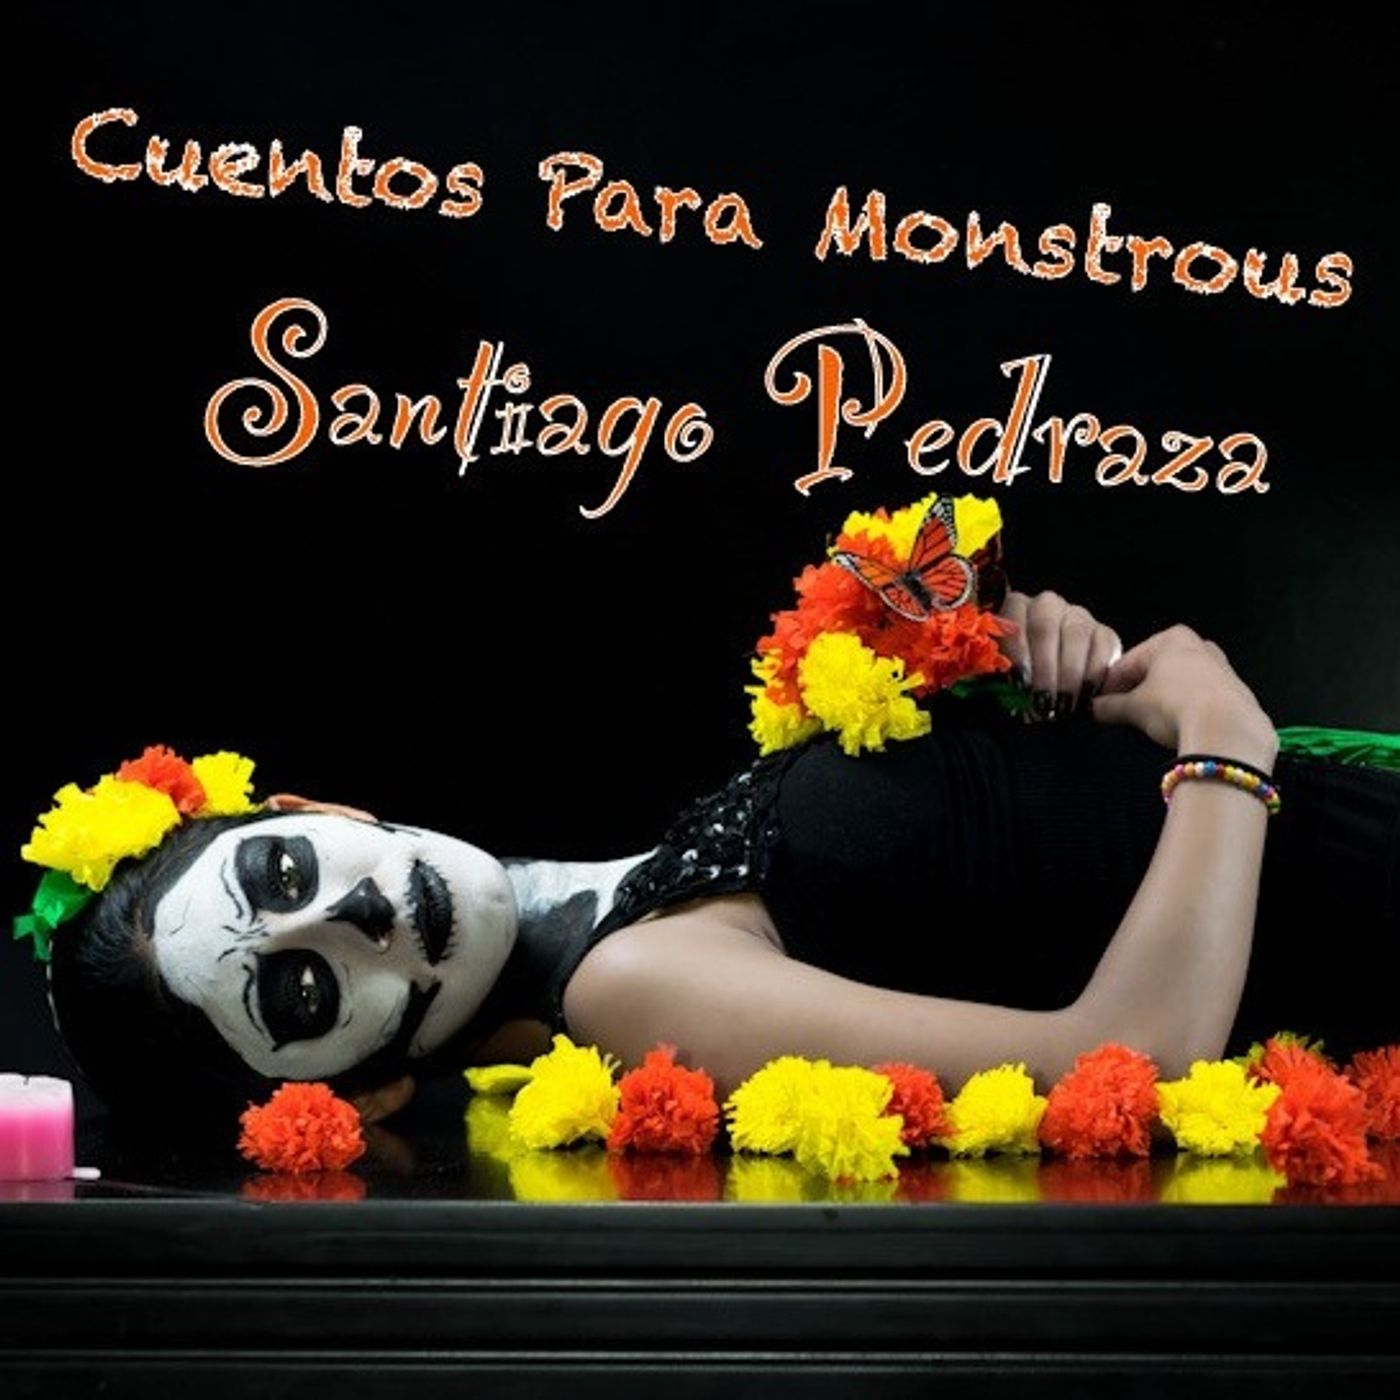 Cuentos para Monstruos by Santiago Pedraza